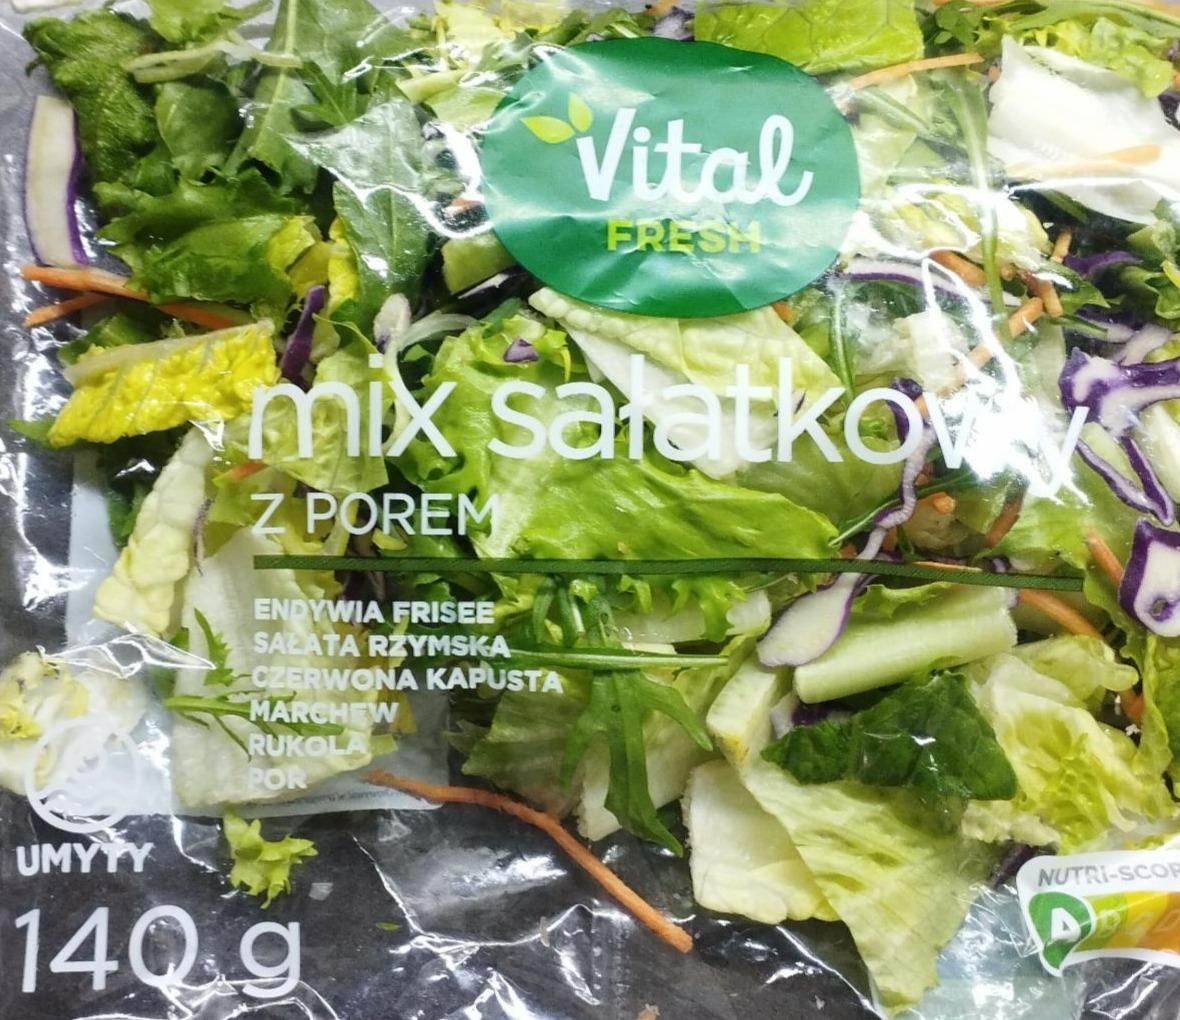 Fotografie - Mix salatkowy z porem Vital fresh